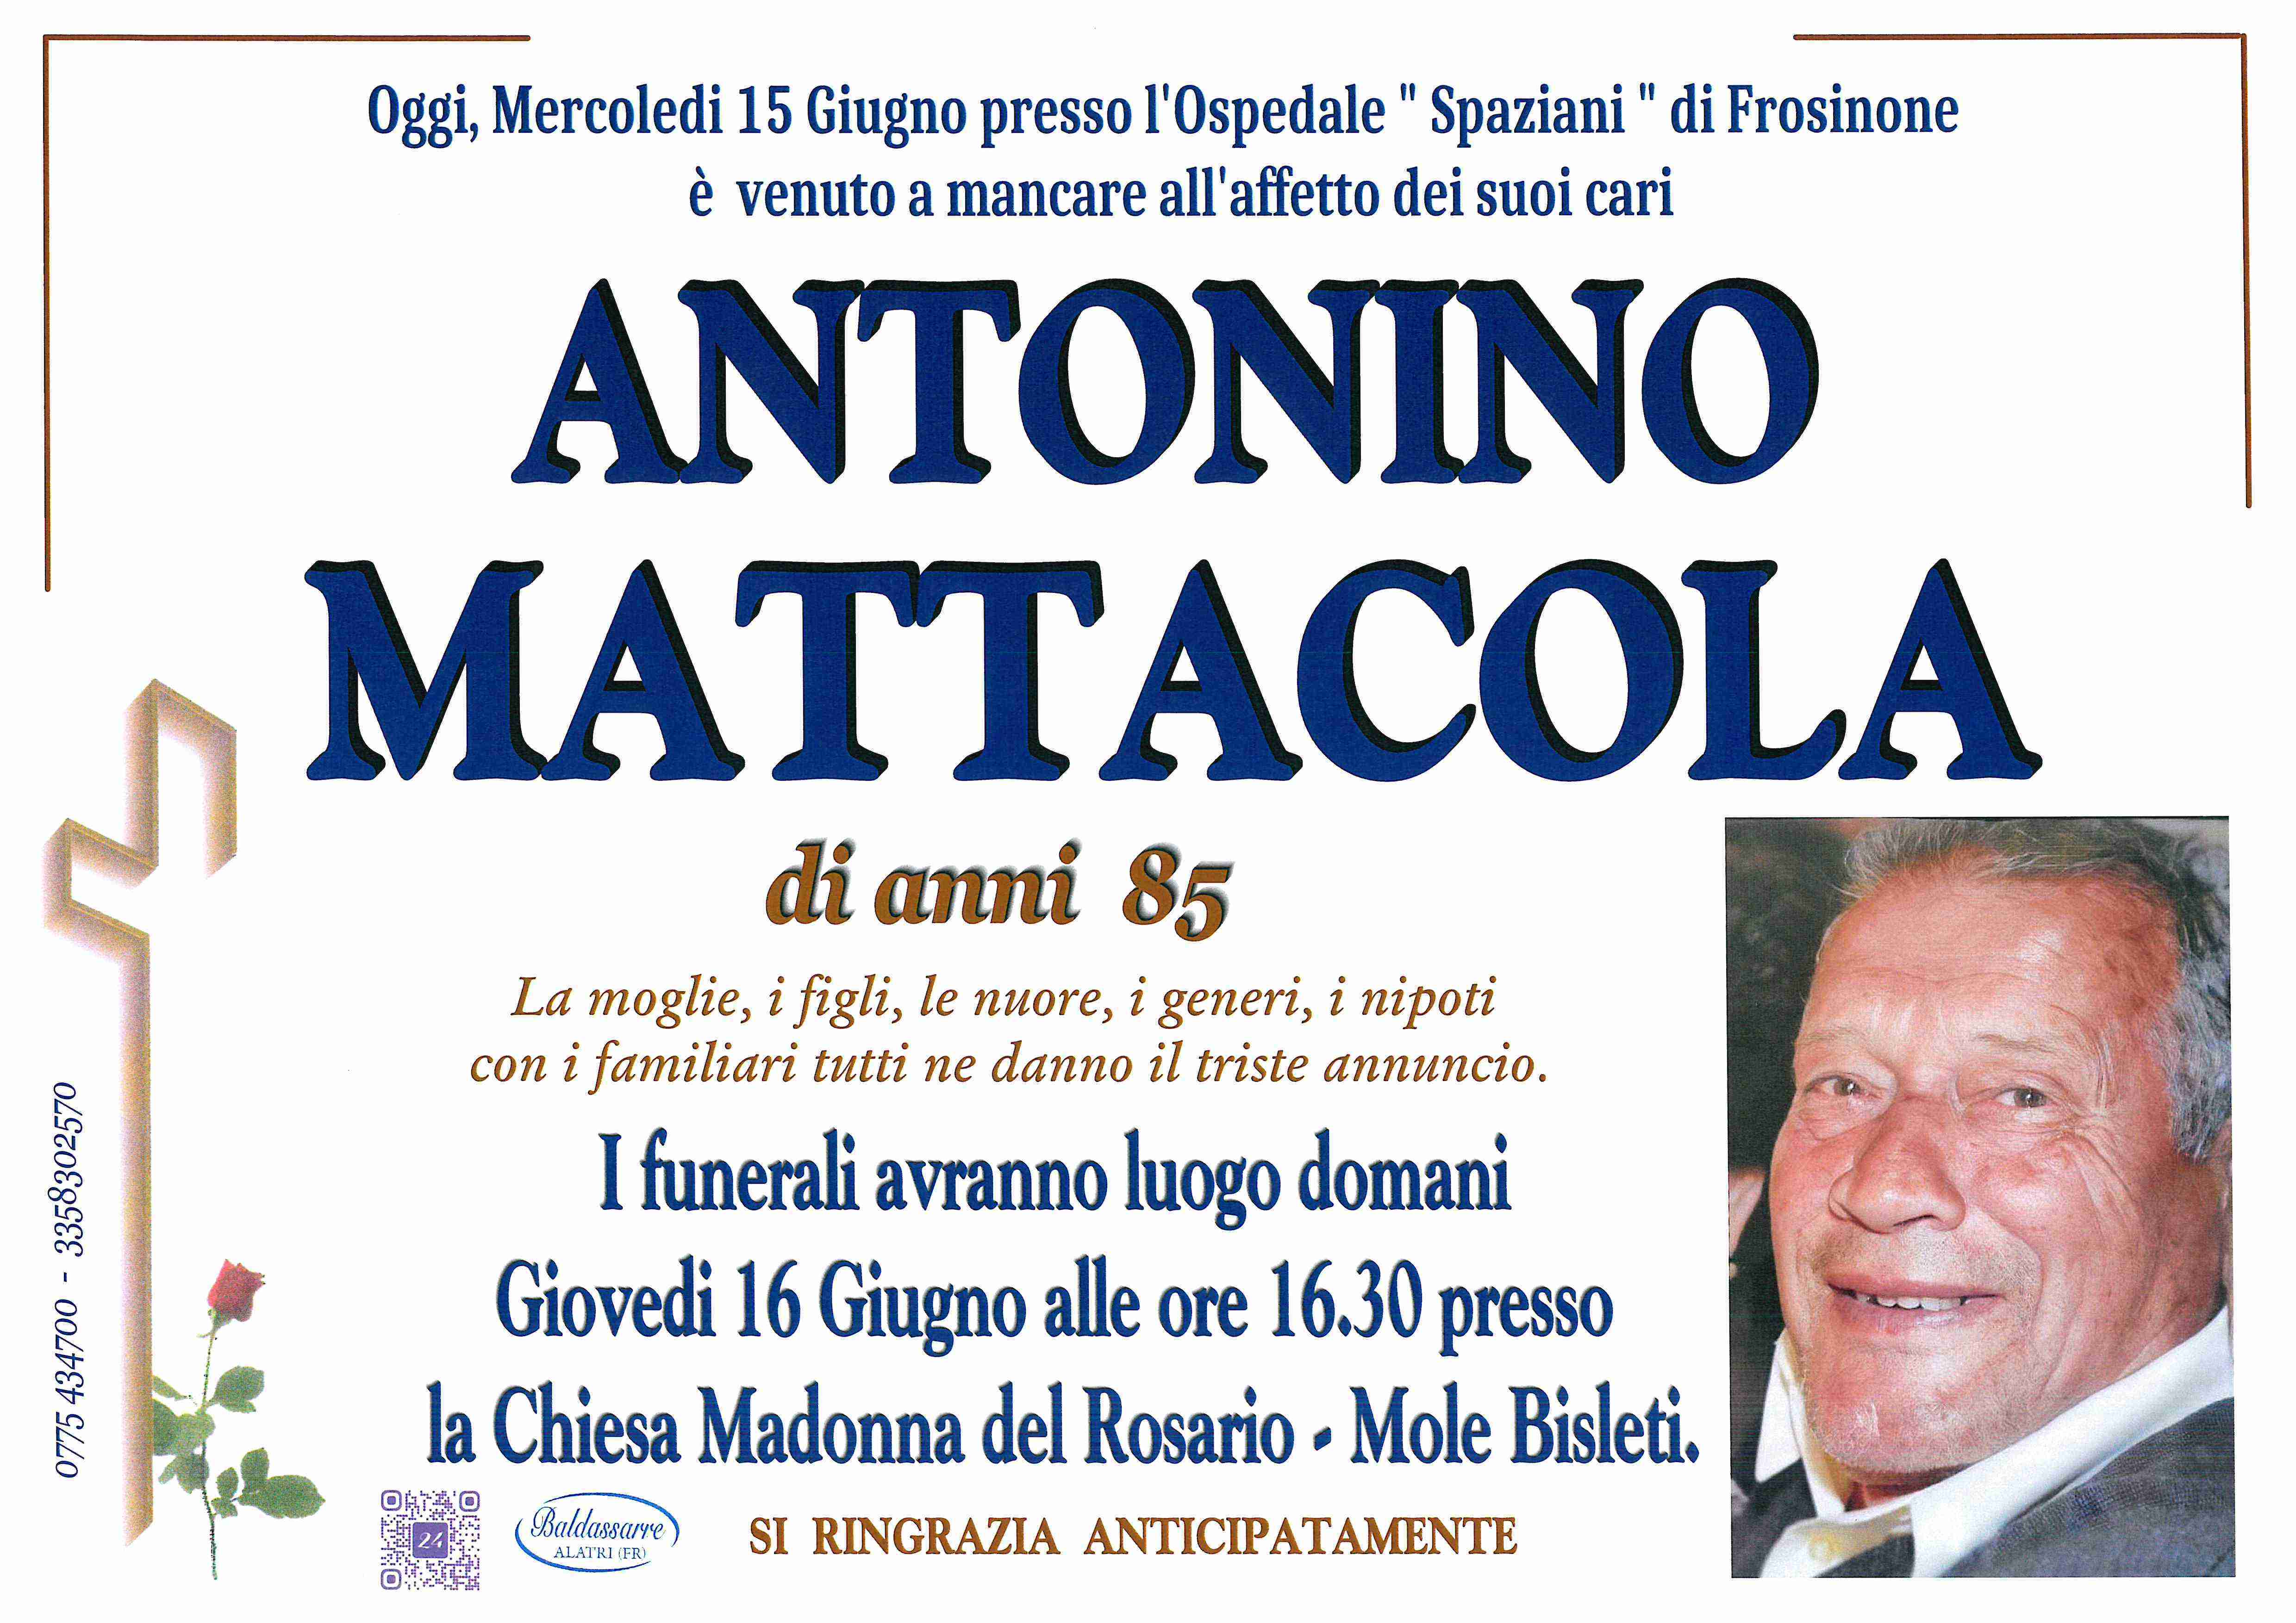 Antonino Mattacola